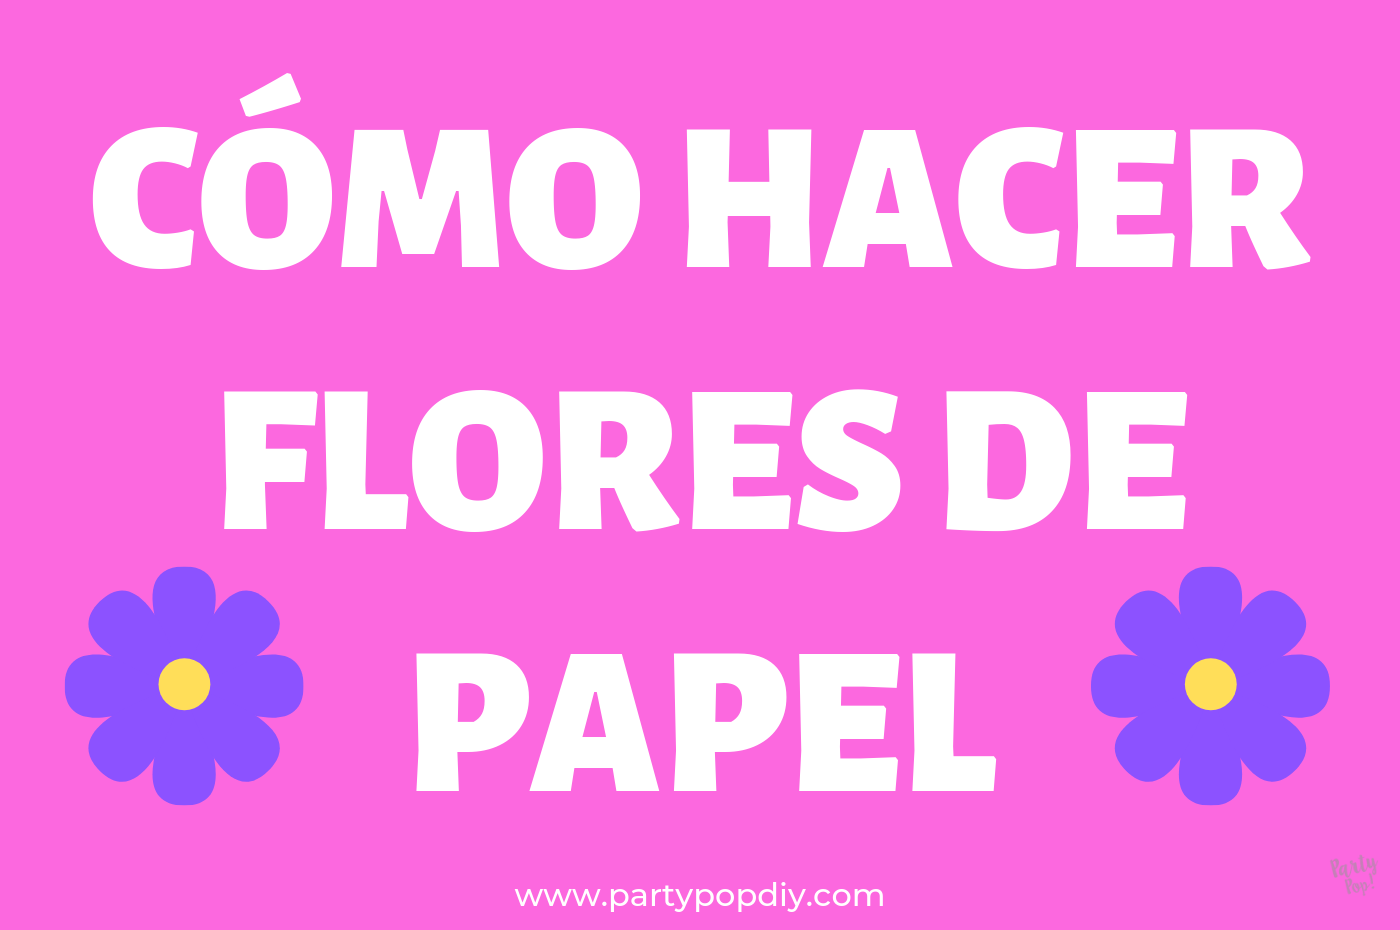 Cómo hacer flores de papel seda | PartyPop DIY